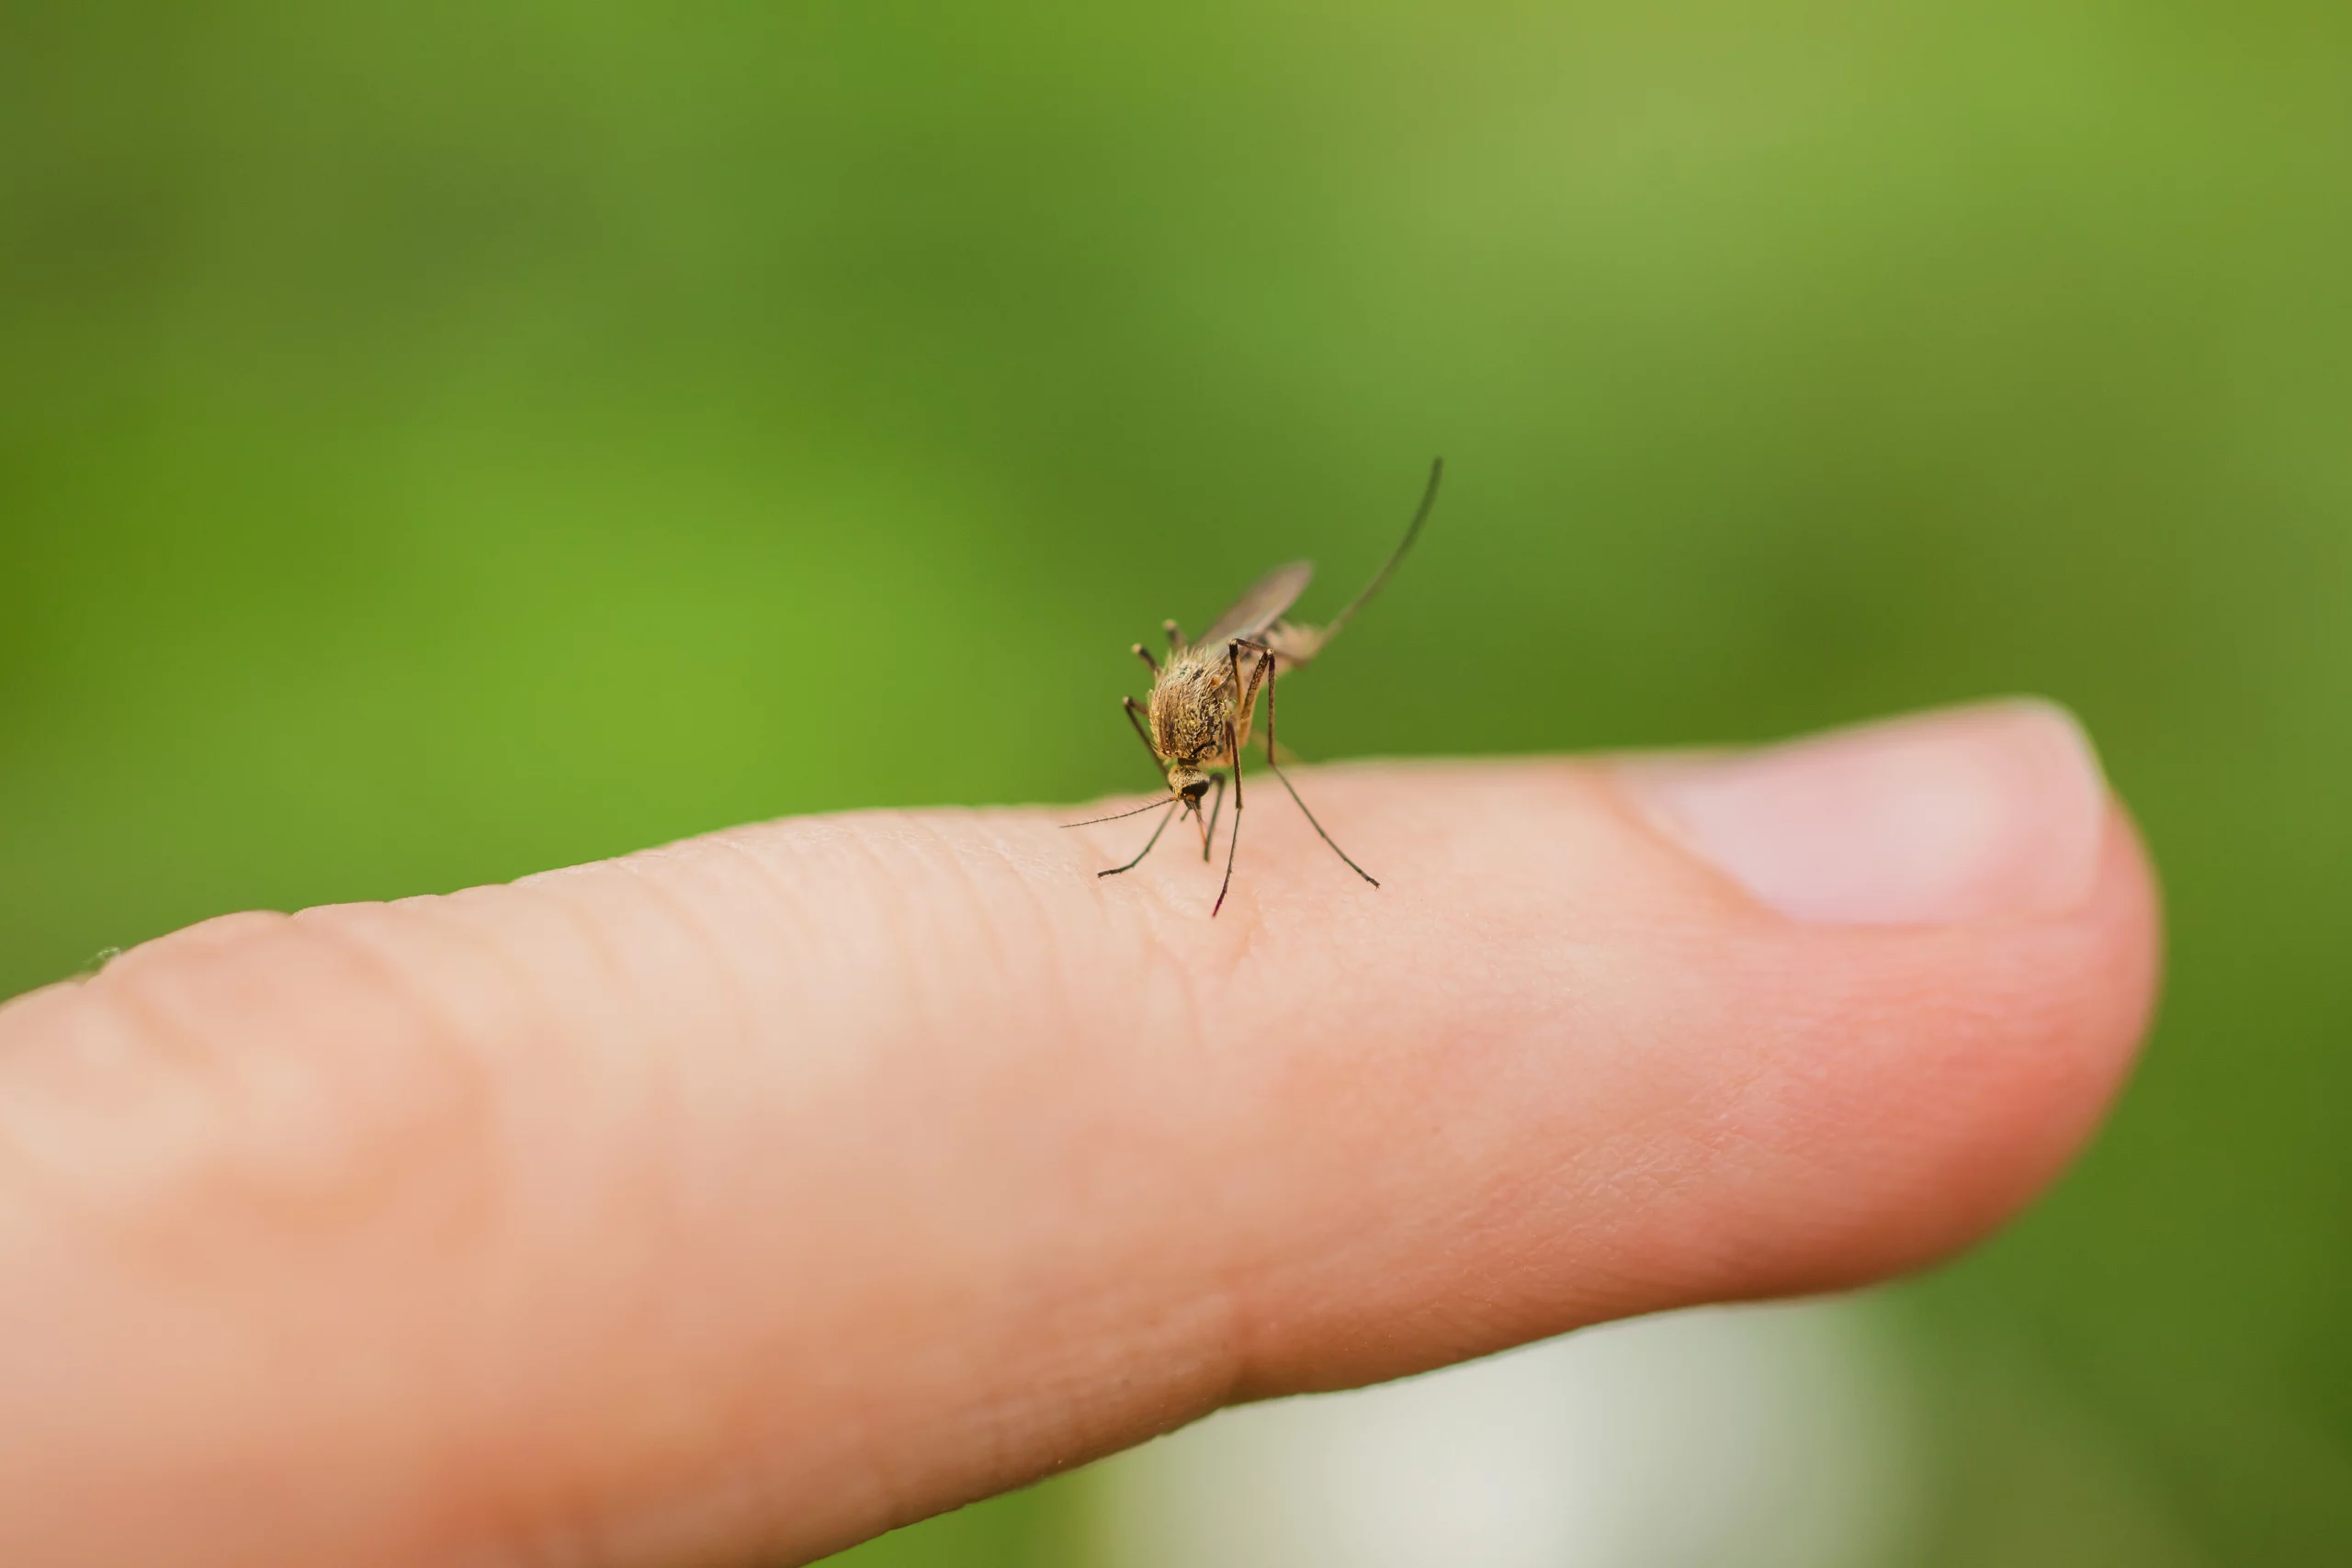 imagem mostra mosquito picando dedo de uma pessoa